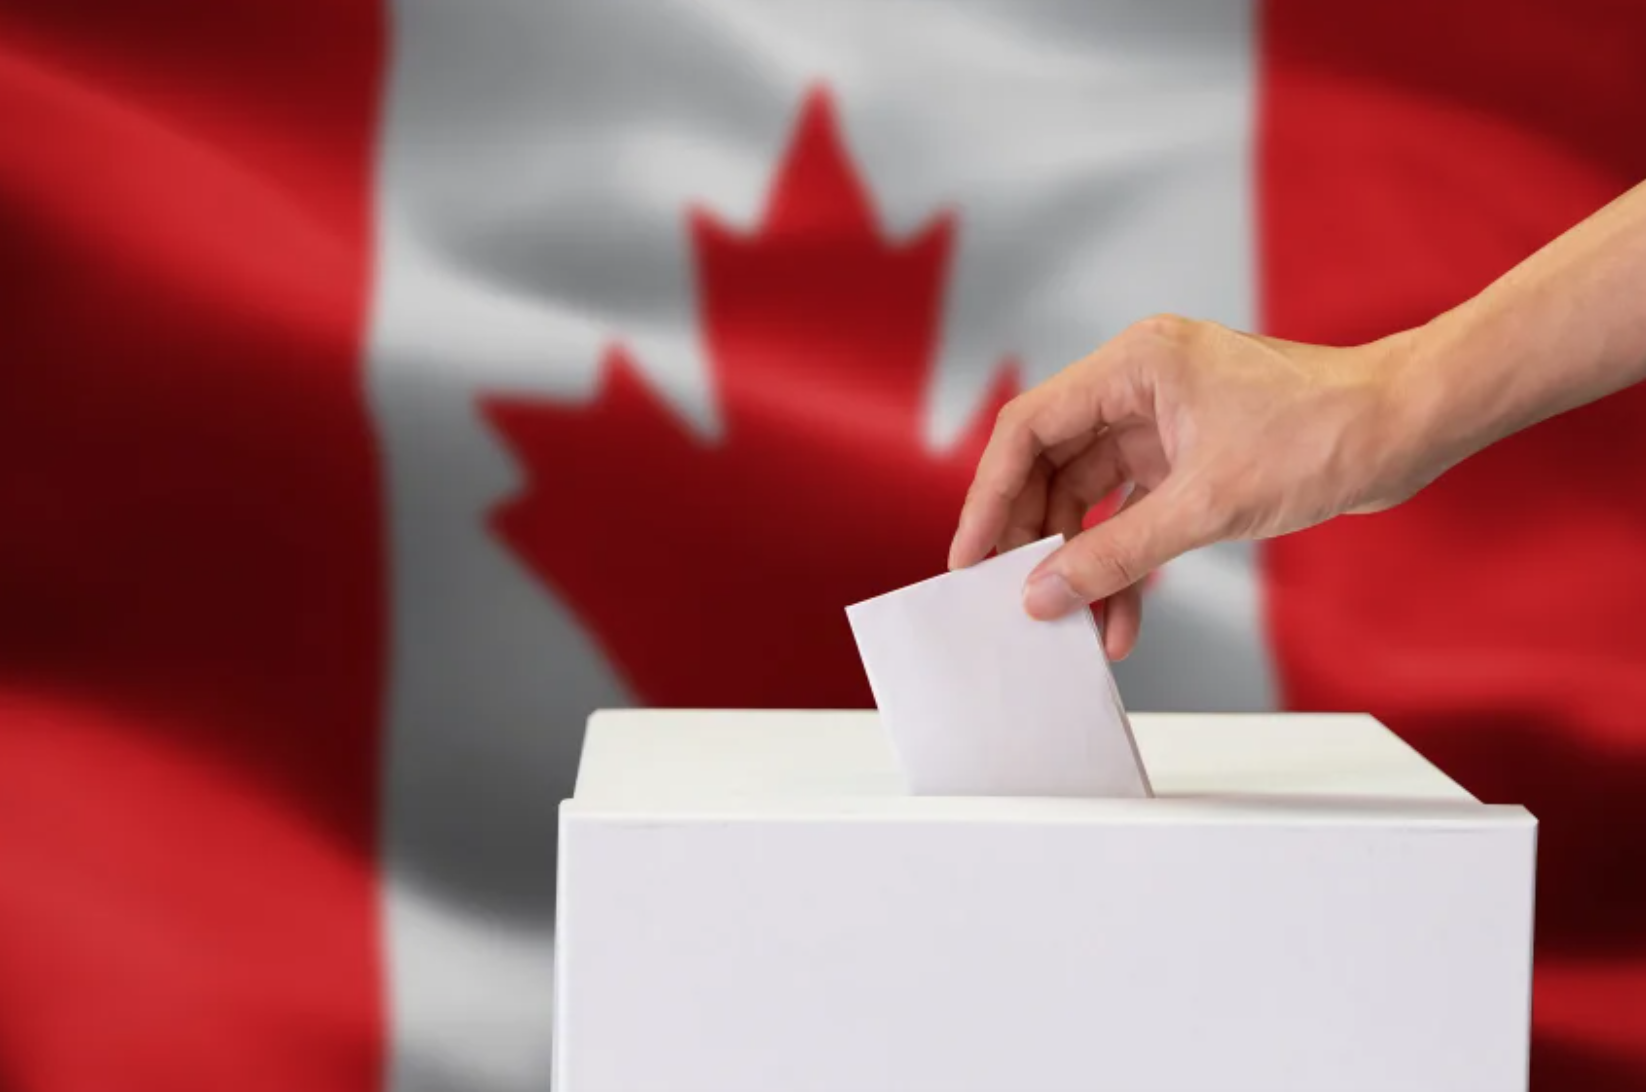 Domani si vota in Canada. Ecco perché l’obiezione di coscienza è in pericolo 1